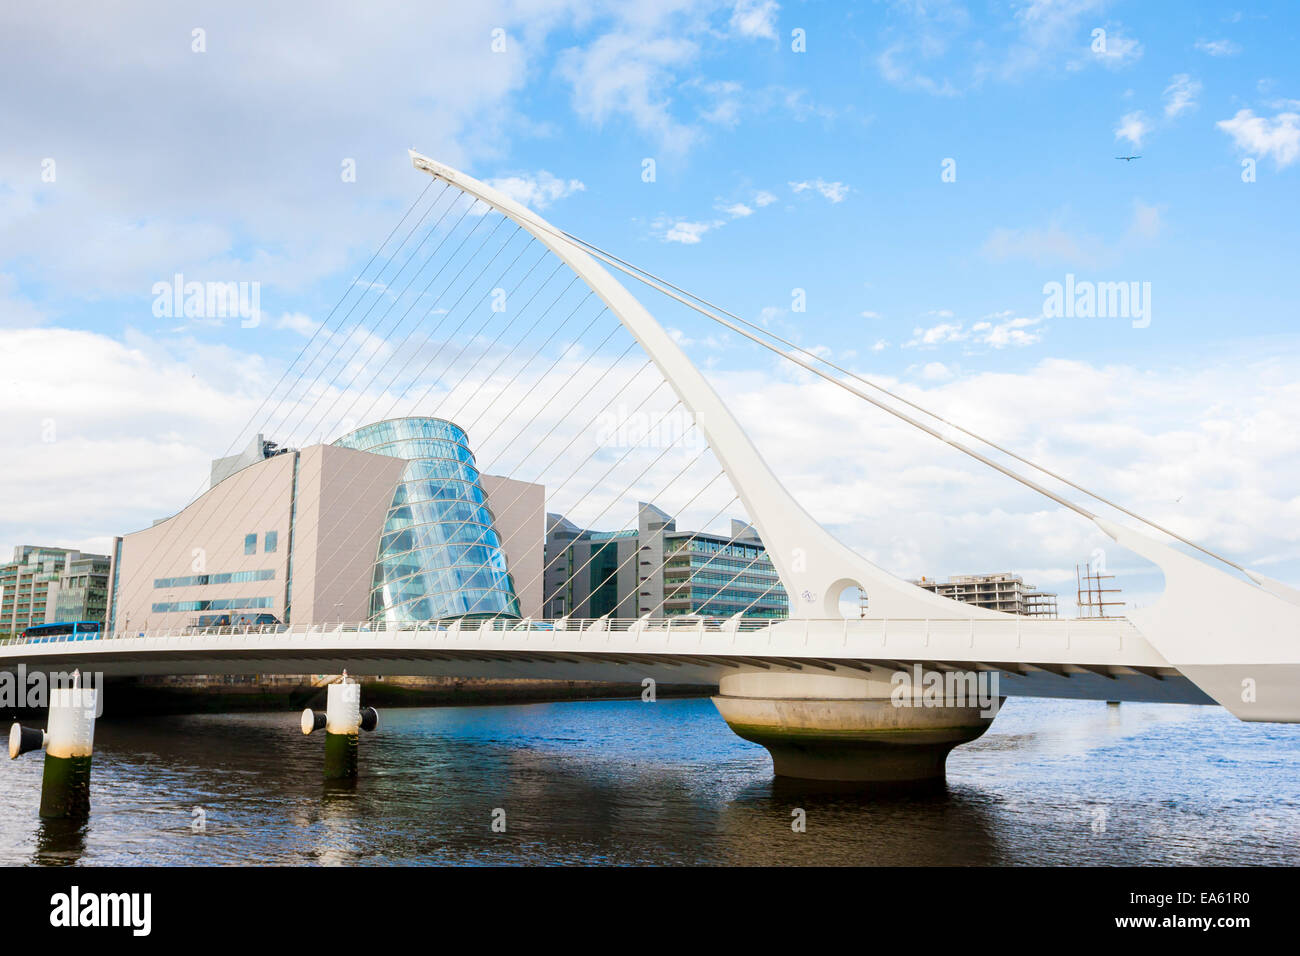 Dublino, Irlanda - 01 Giugno 2014: Samuel Beckett Bridge a Dublino in Irlanda il 01 giugno, 2014. Bel ponte appare come un'arpa Foto Stock